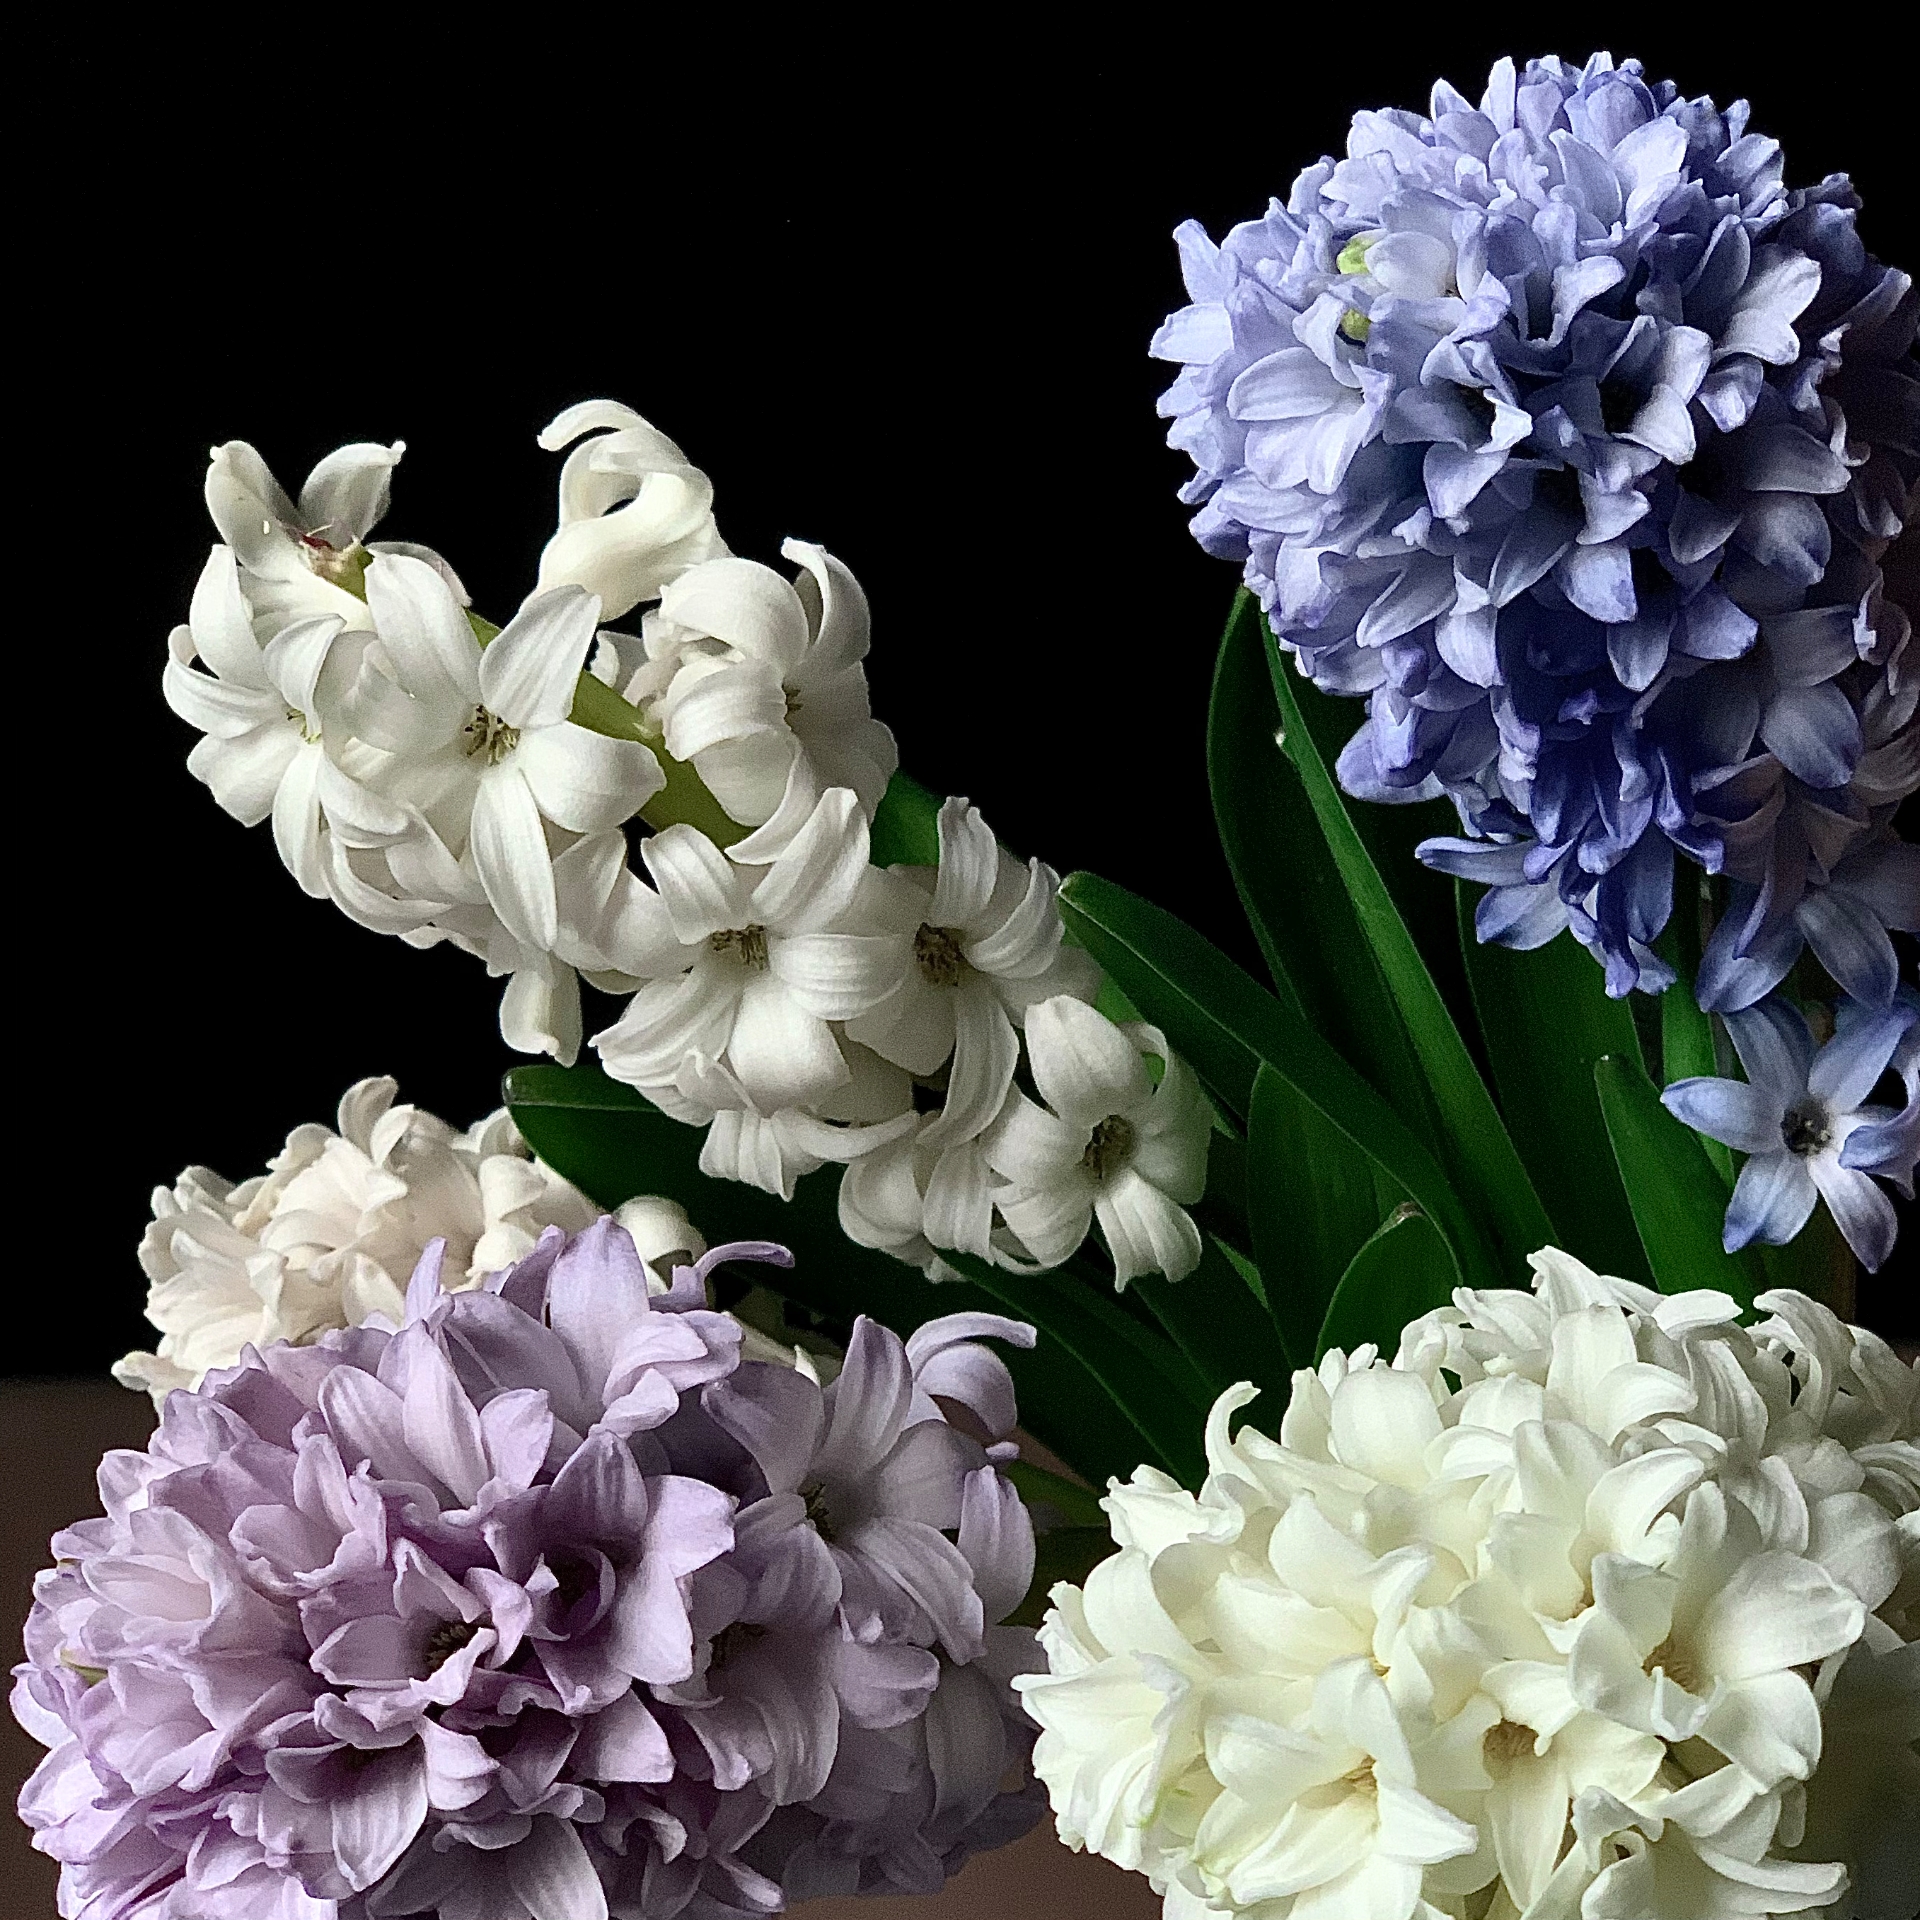 H Y A Z I N T H E N 
__________
Könnt ihr sie auch riechen? 
Happy Weekend! 🌸💣
__________
#Hyazinthen
#flowers #blue #wh